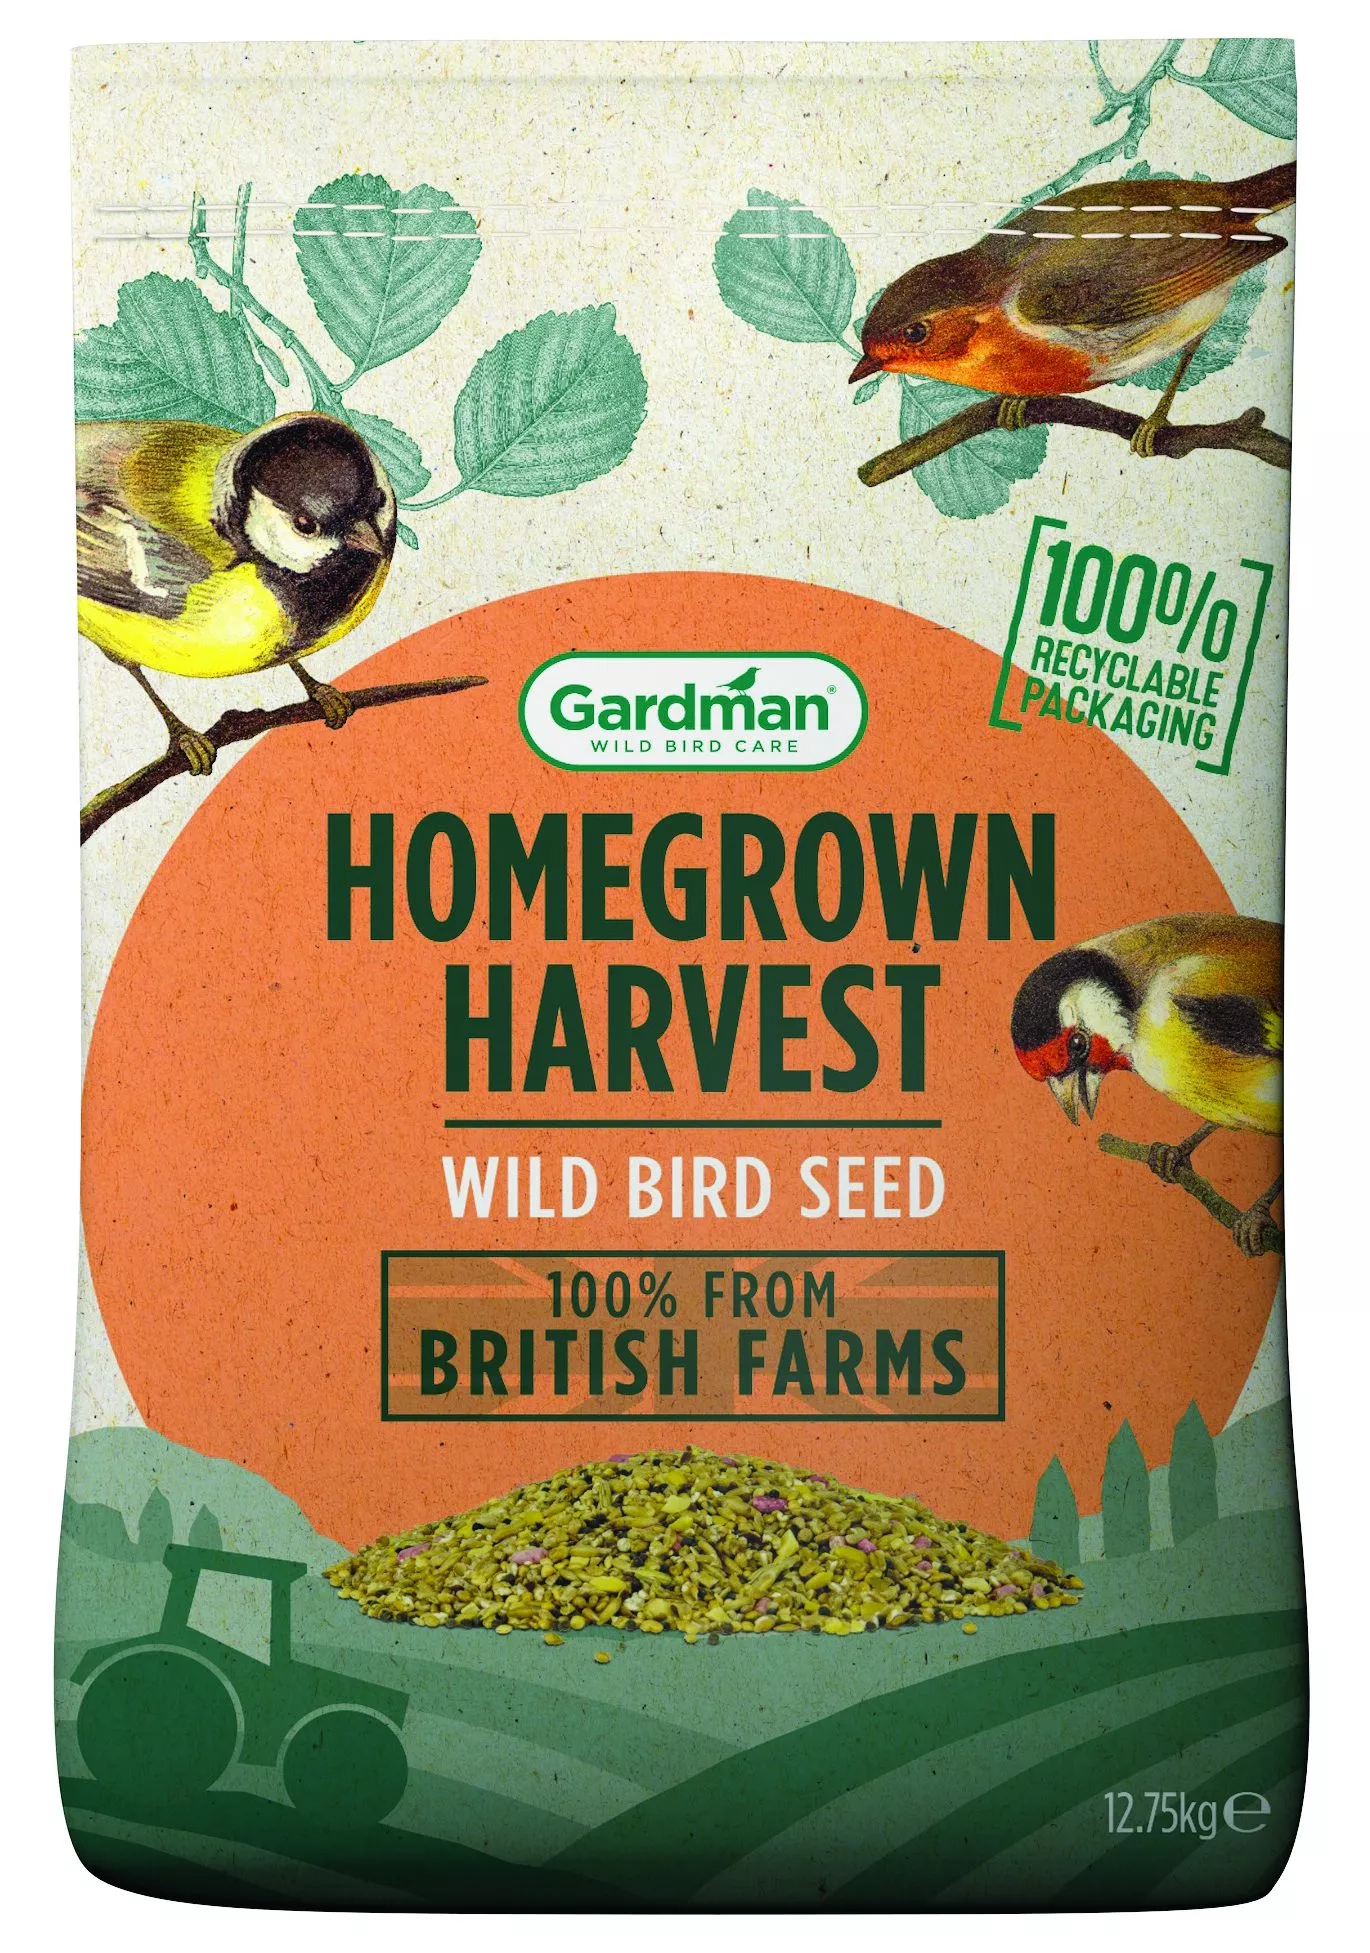 Gardman Homegrown Harvest Seed 12,75kg Bag